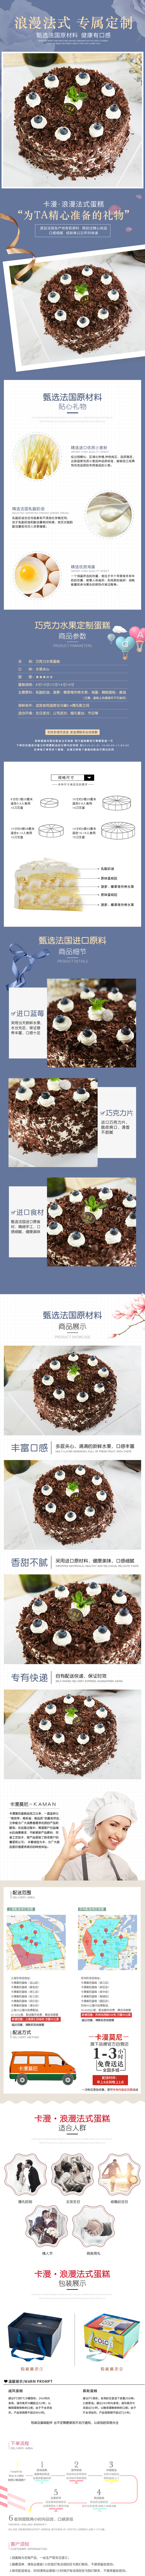 蓝莓巧克力蛋糕.jpg